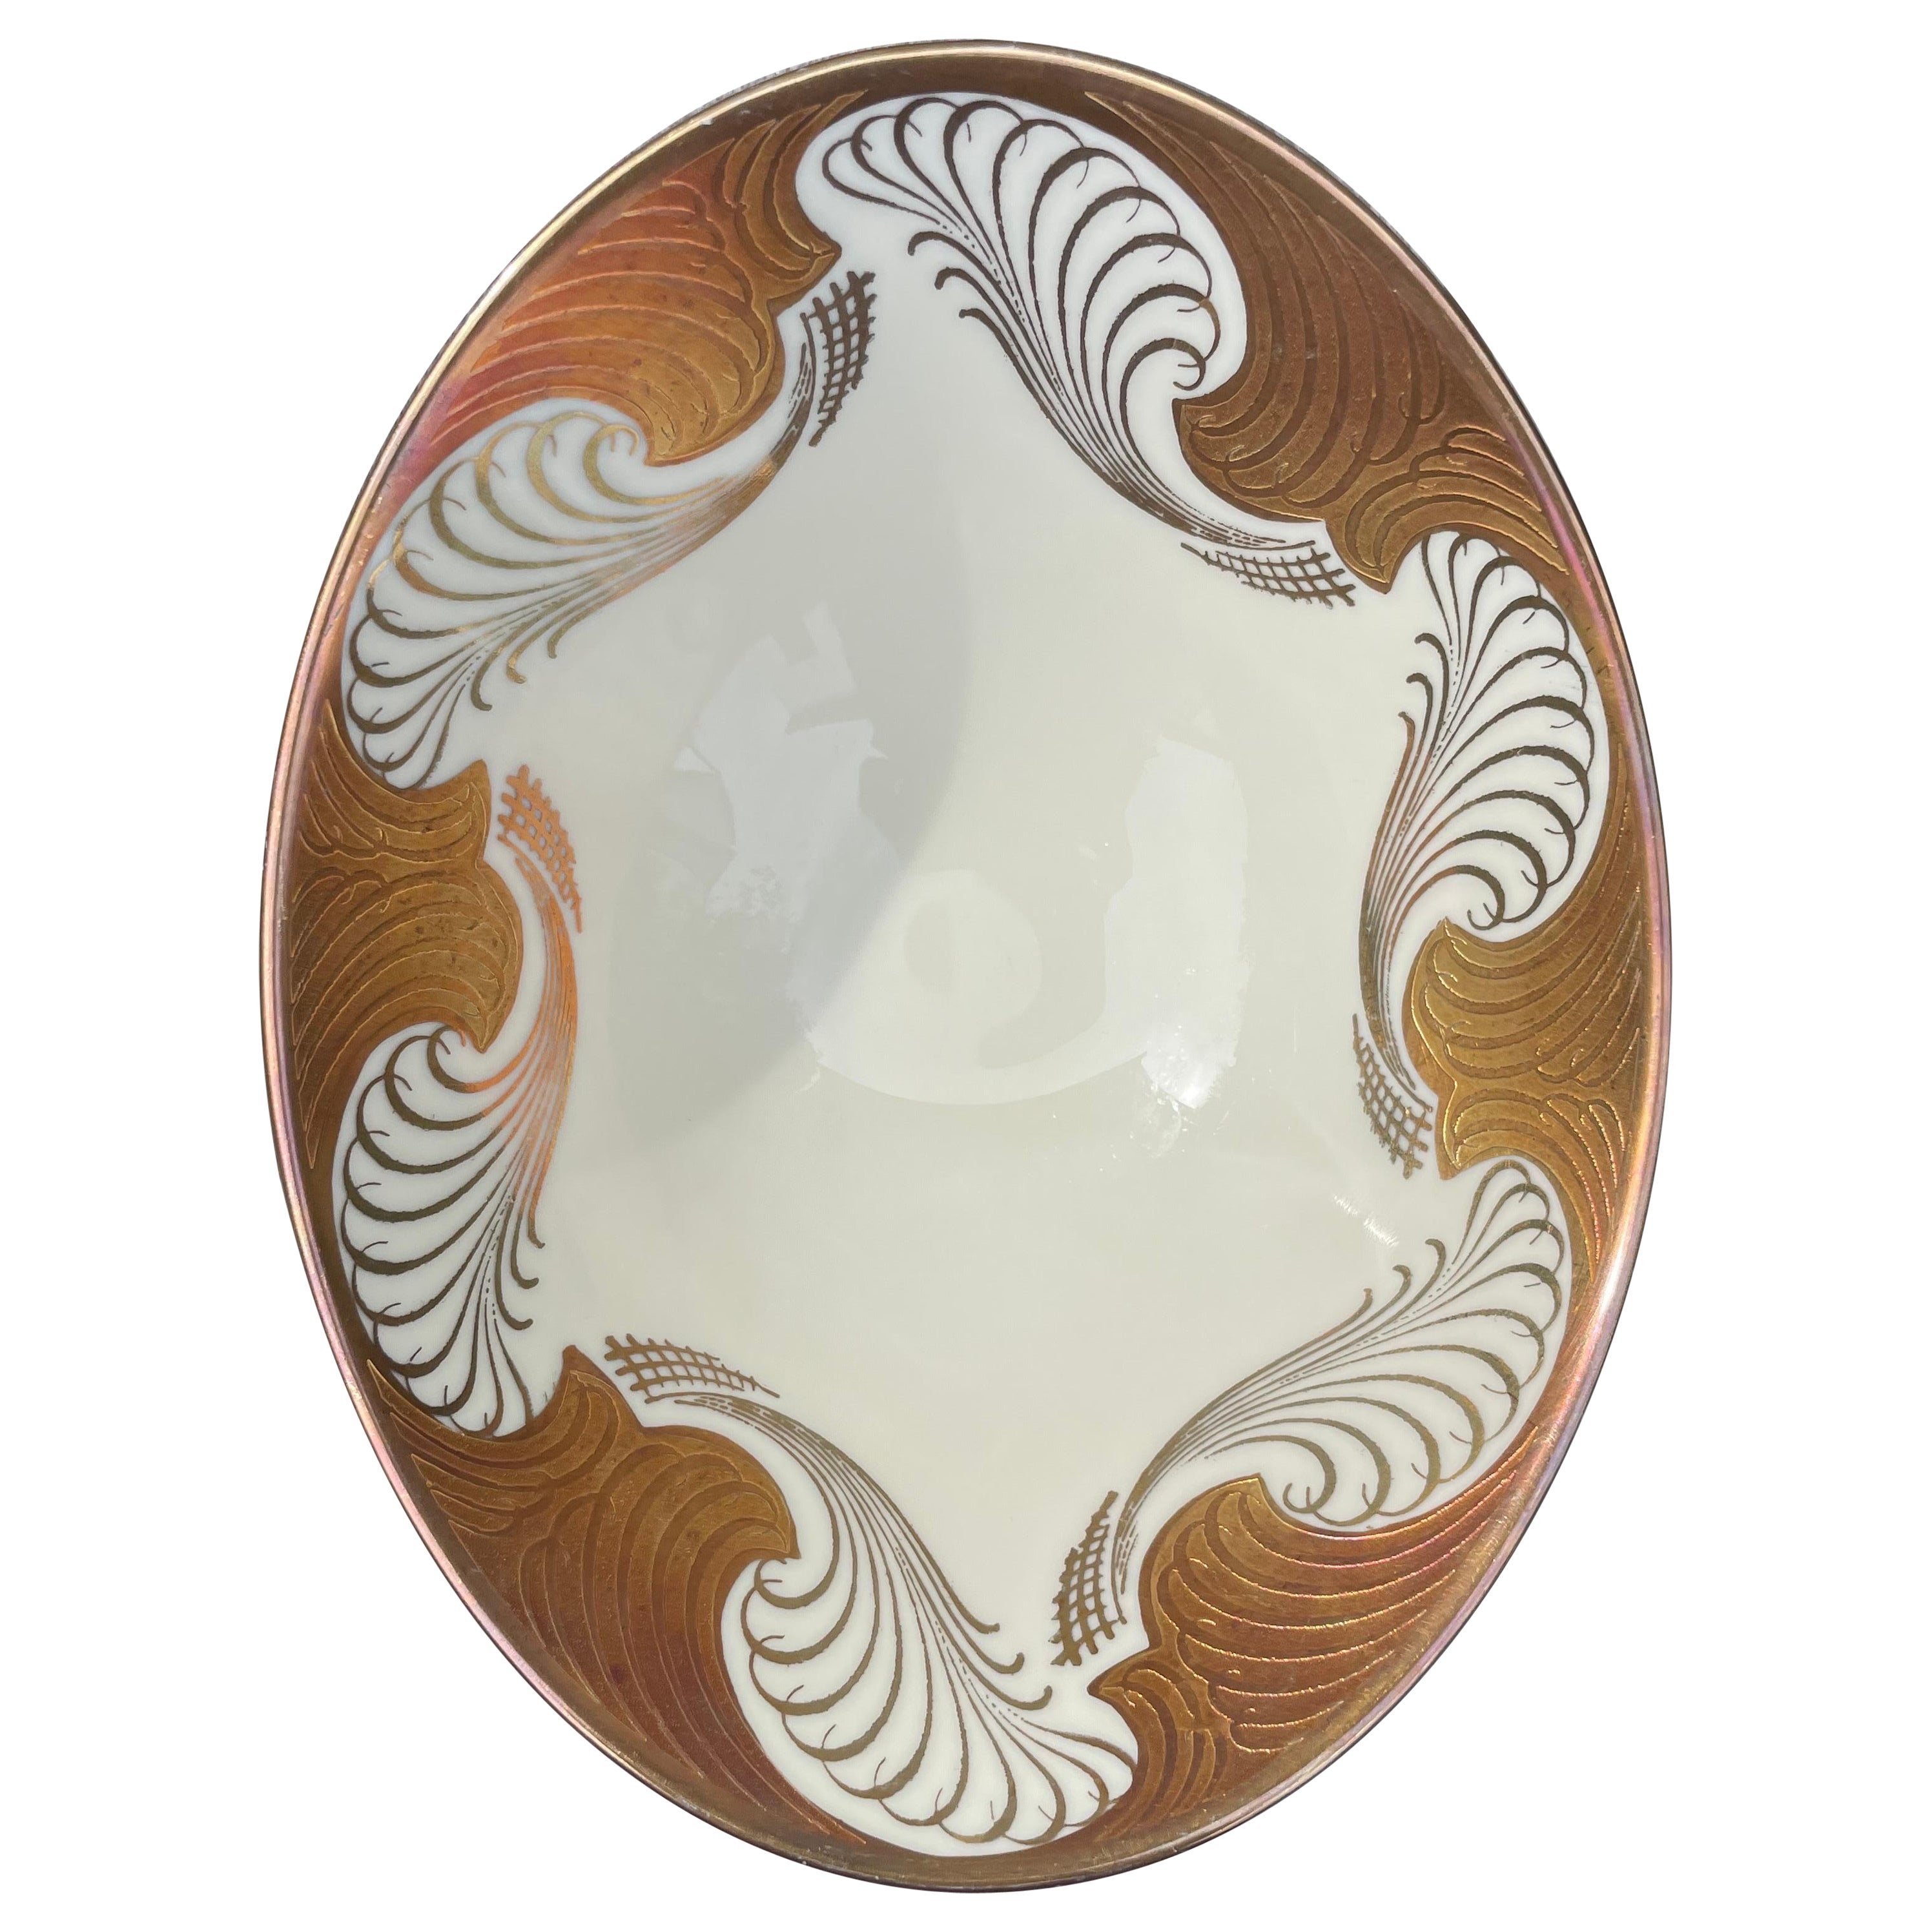 Alka Kunst Bavaria Oval Ivory White Golden Decorative Porcelain Bowl, 1960s